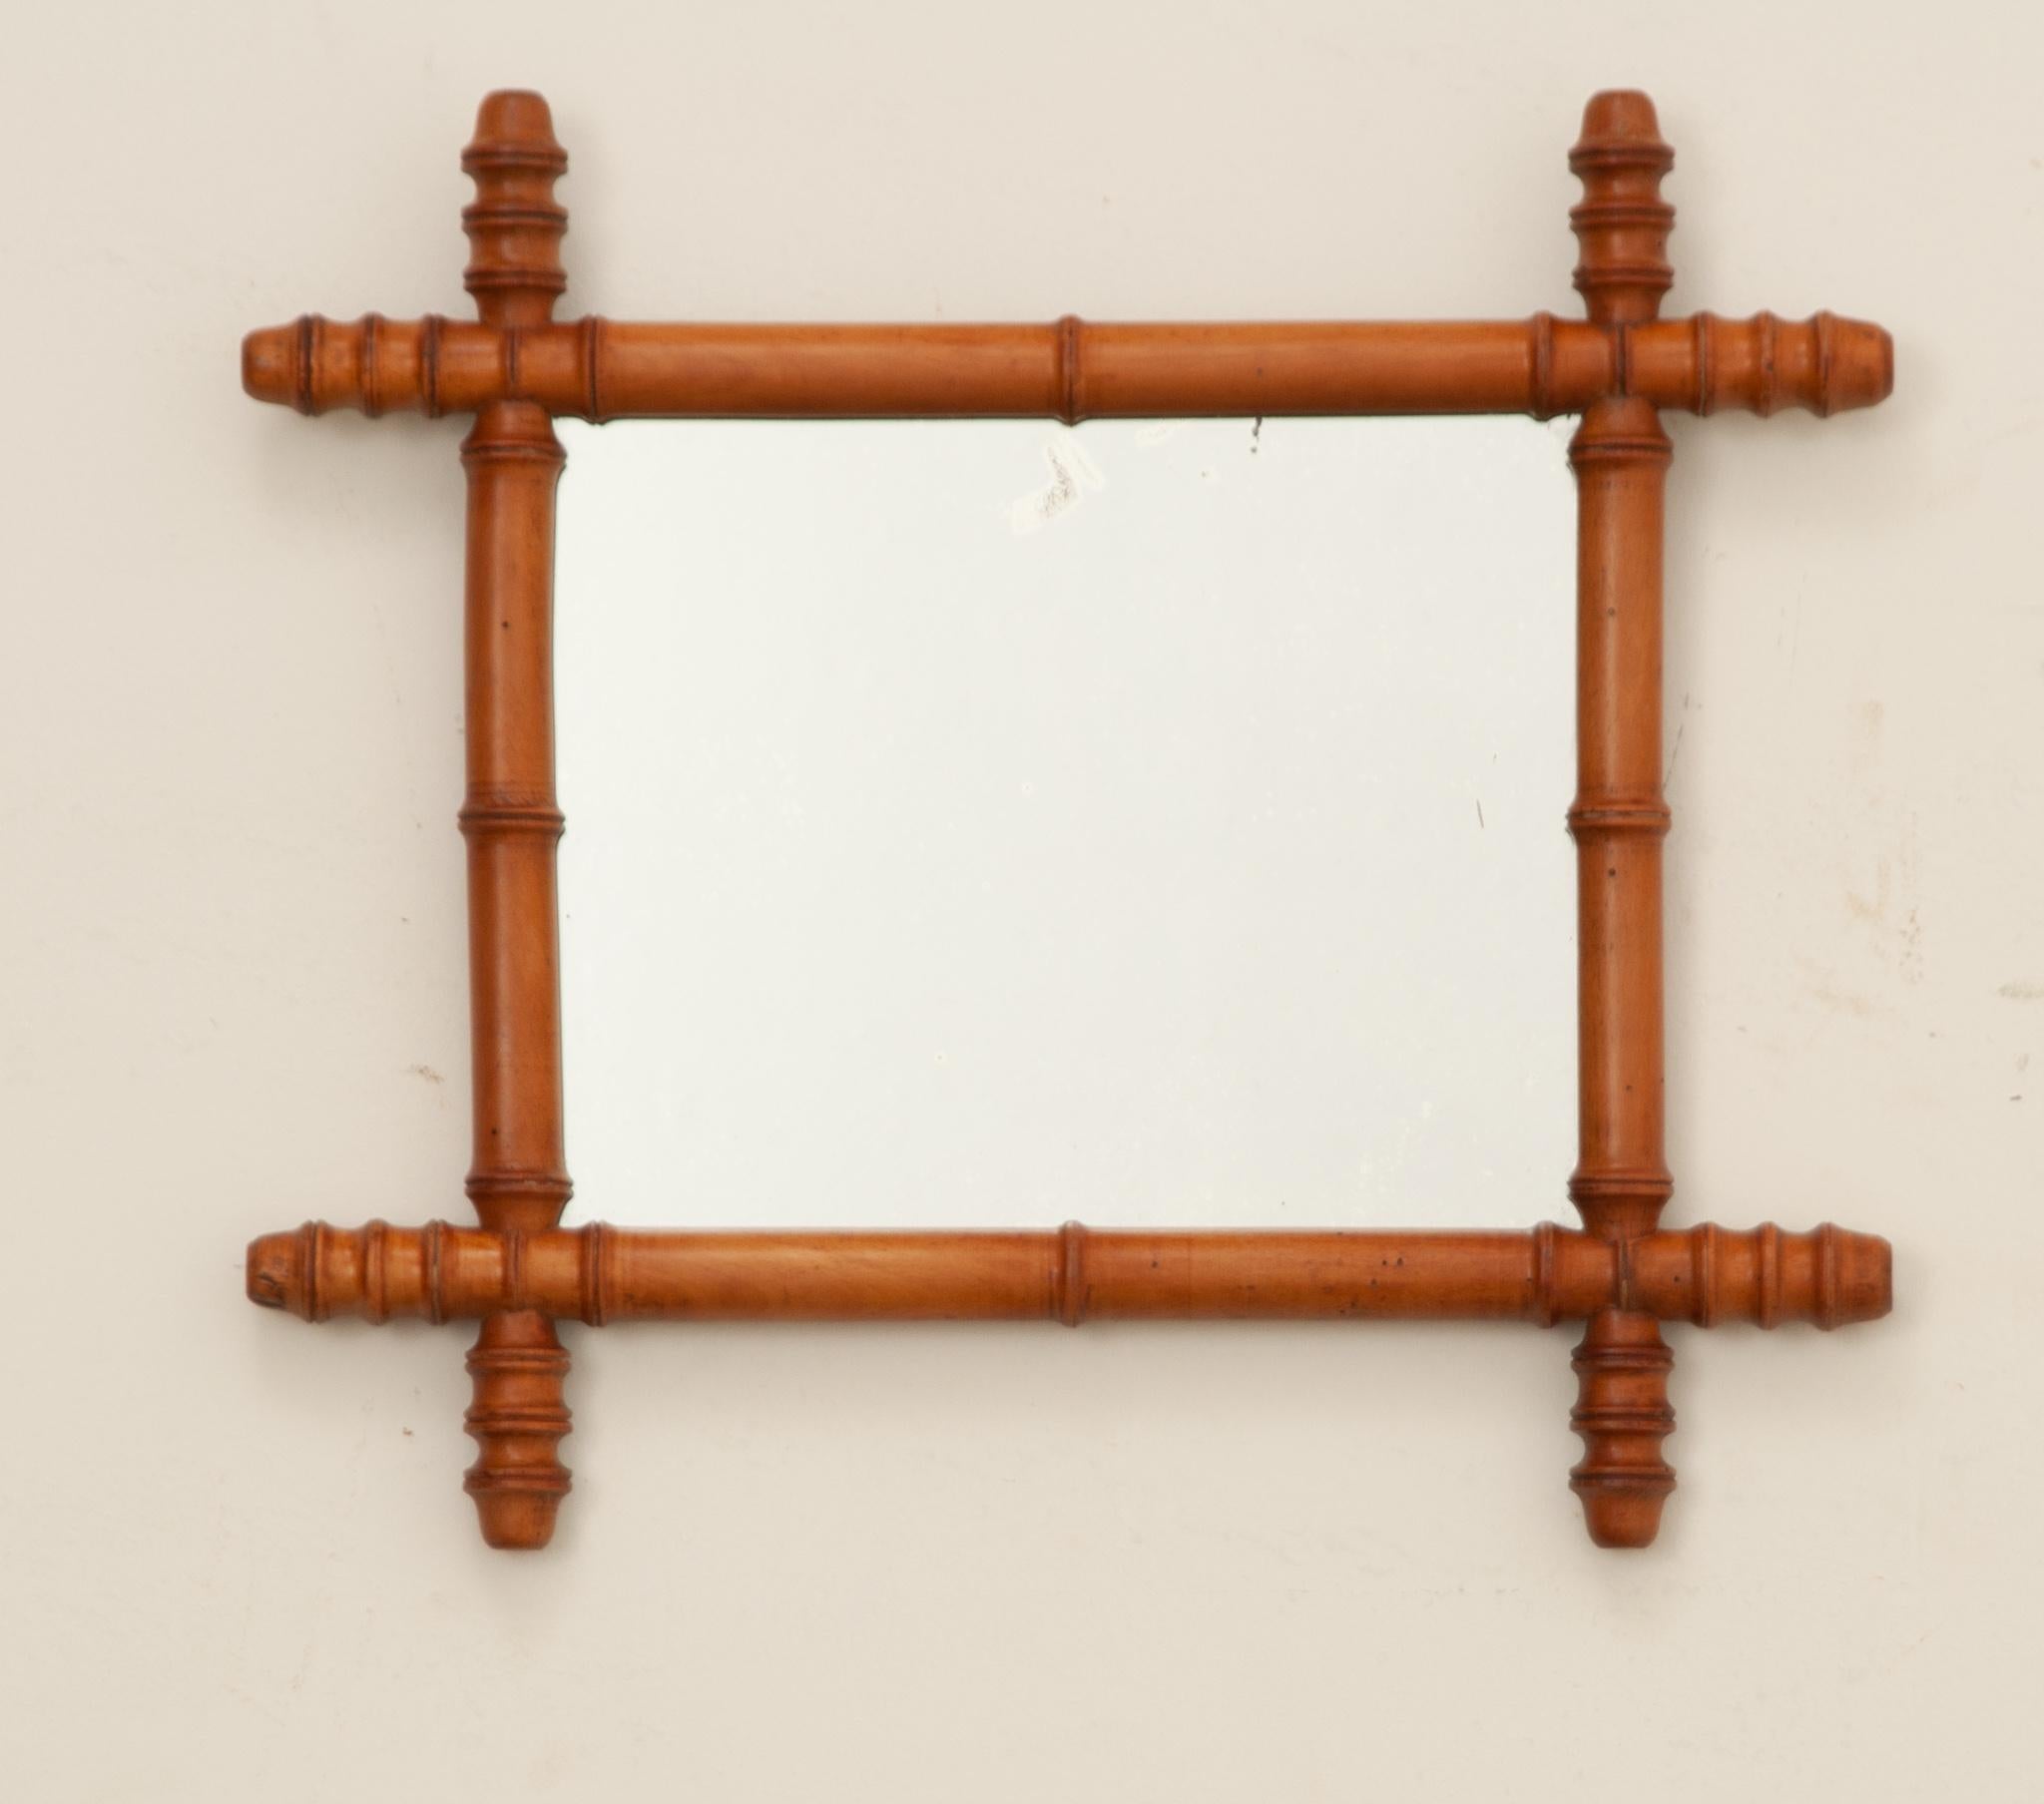 Ein reizvoller Spiegel aus gedrechseltem Holz und Bambusimitat aus dem Frankreich des frühen 20. Jahrhunderts. Der Holzrahmen des Spiegels wurde kunstvoll zu einem stilisierten Bambusmotiv gedreht. Das verspiegelte Glas ist original auf die antike